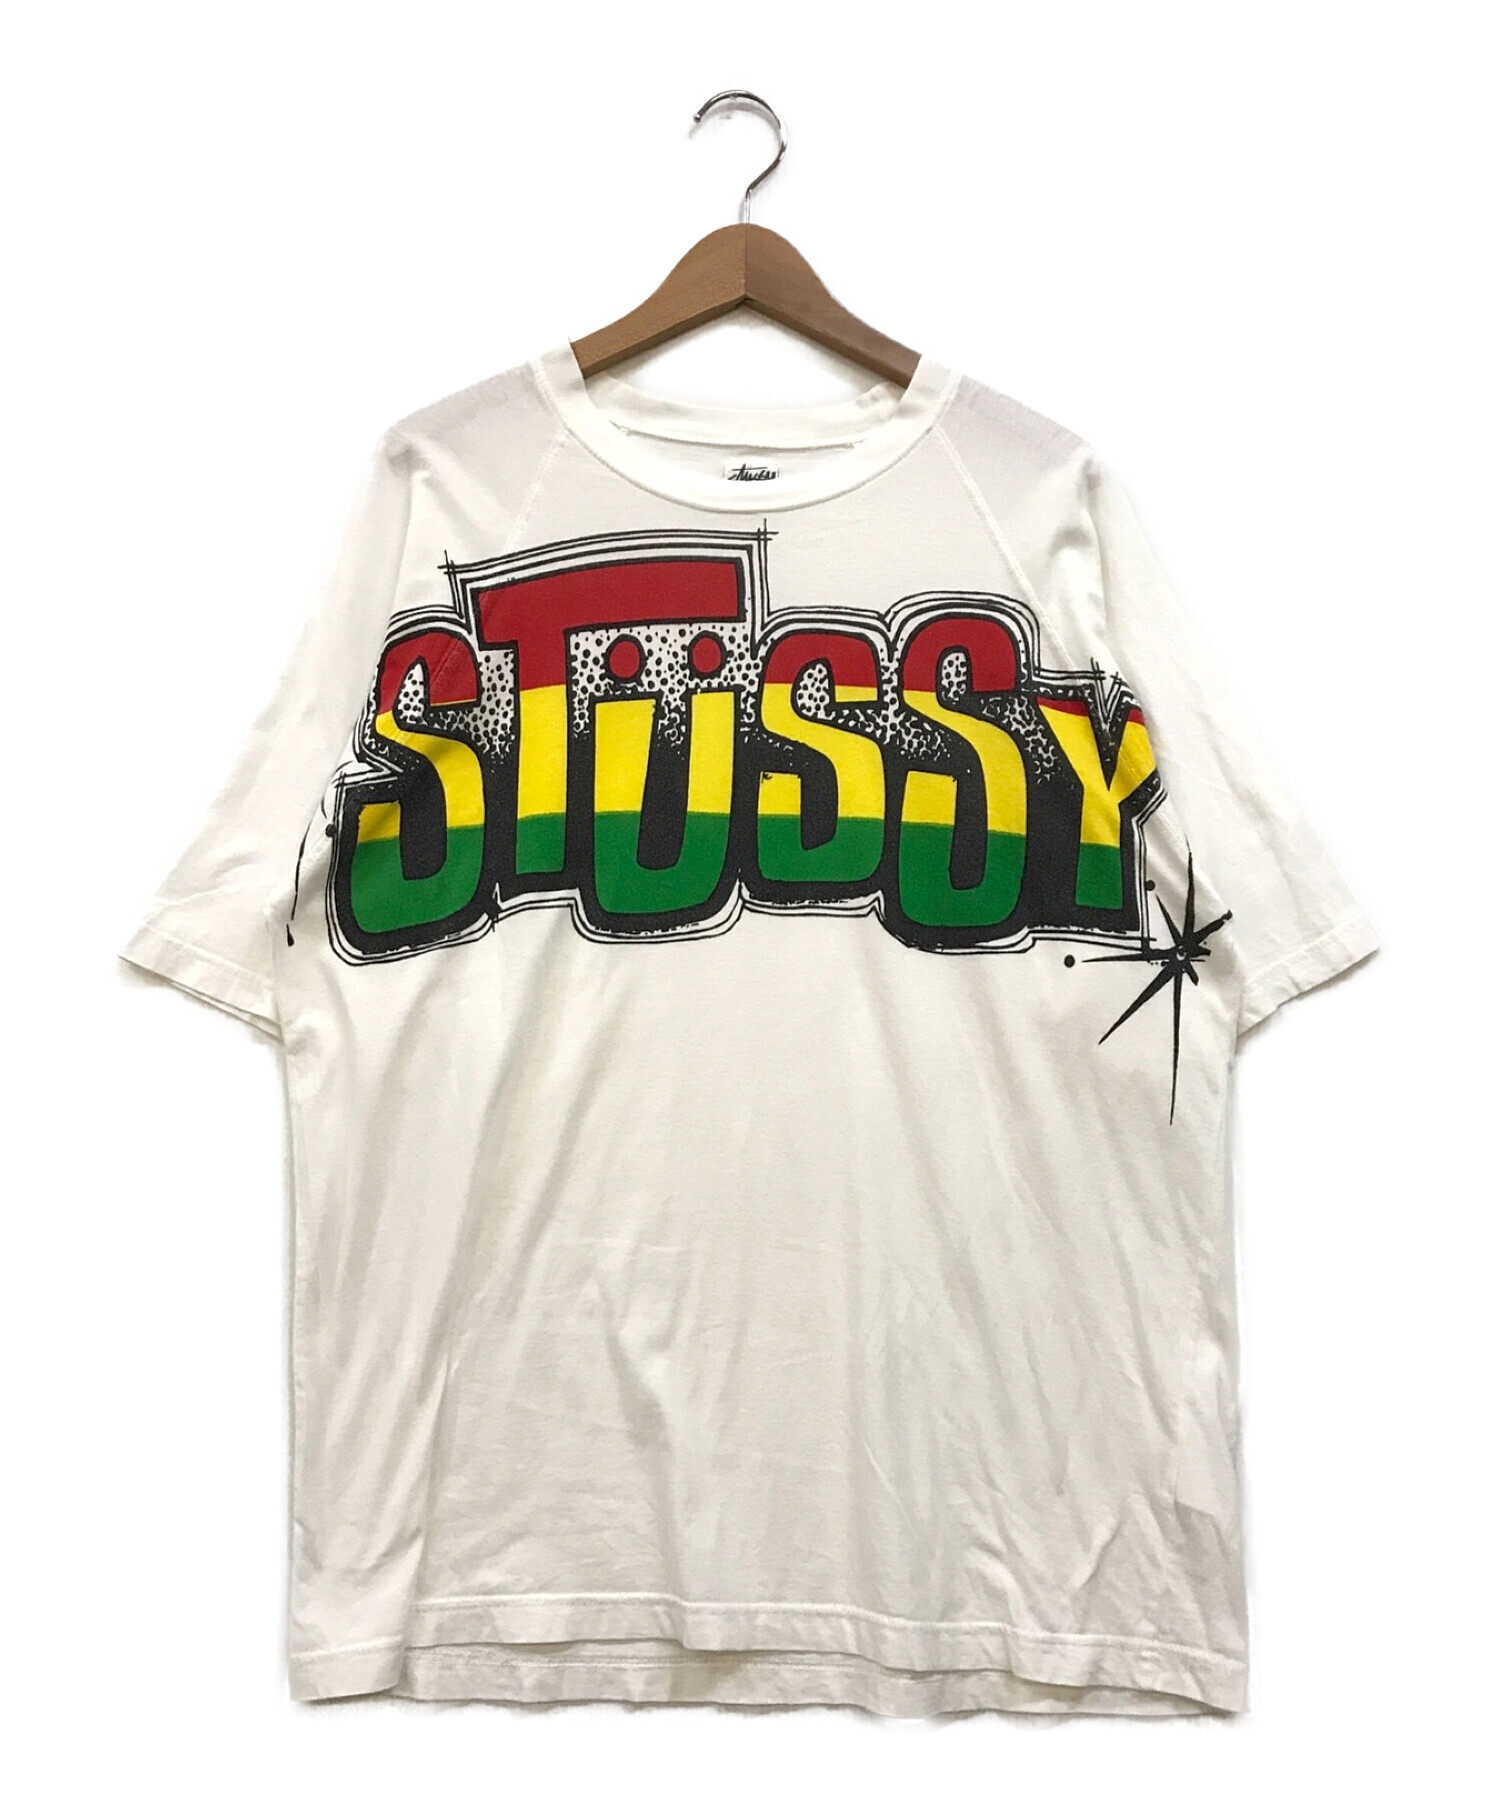 stussy (ステューシー) ラグランスリーブプリントTシャツ ホワイト サイズ:M